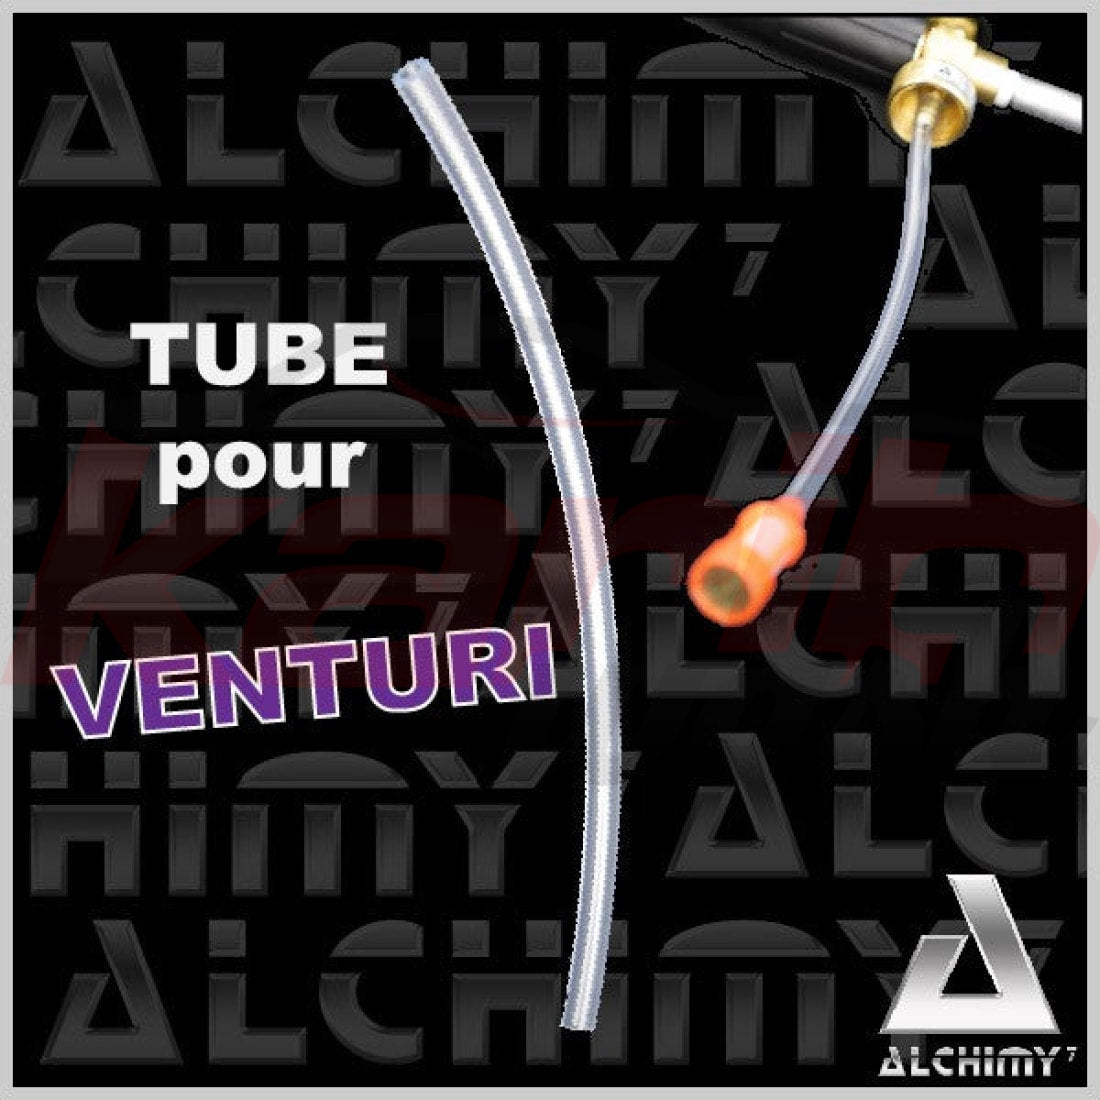 Tube résistance chimique pour Venturi V1, V2 ou PRO - ALCHIMY7 - KARIBWASH